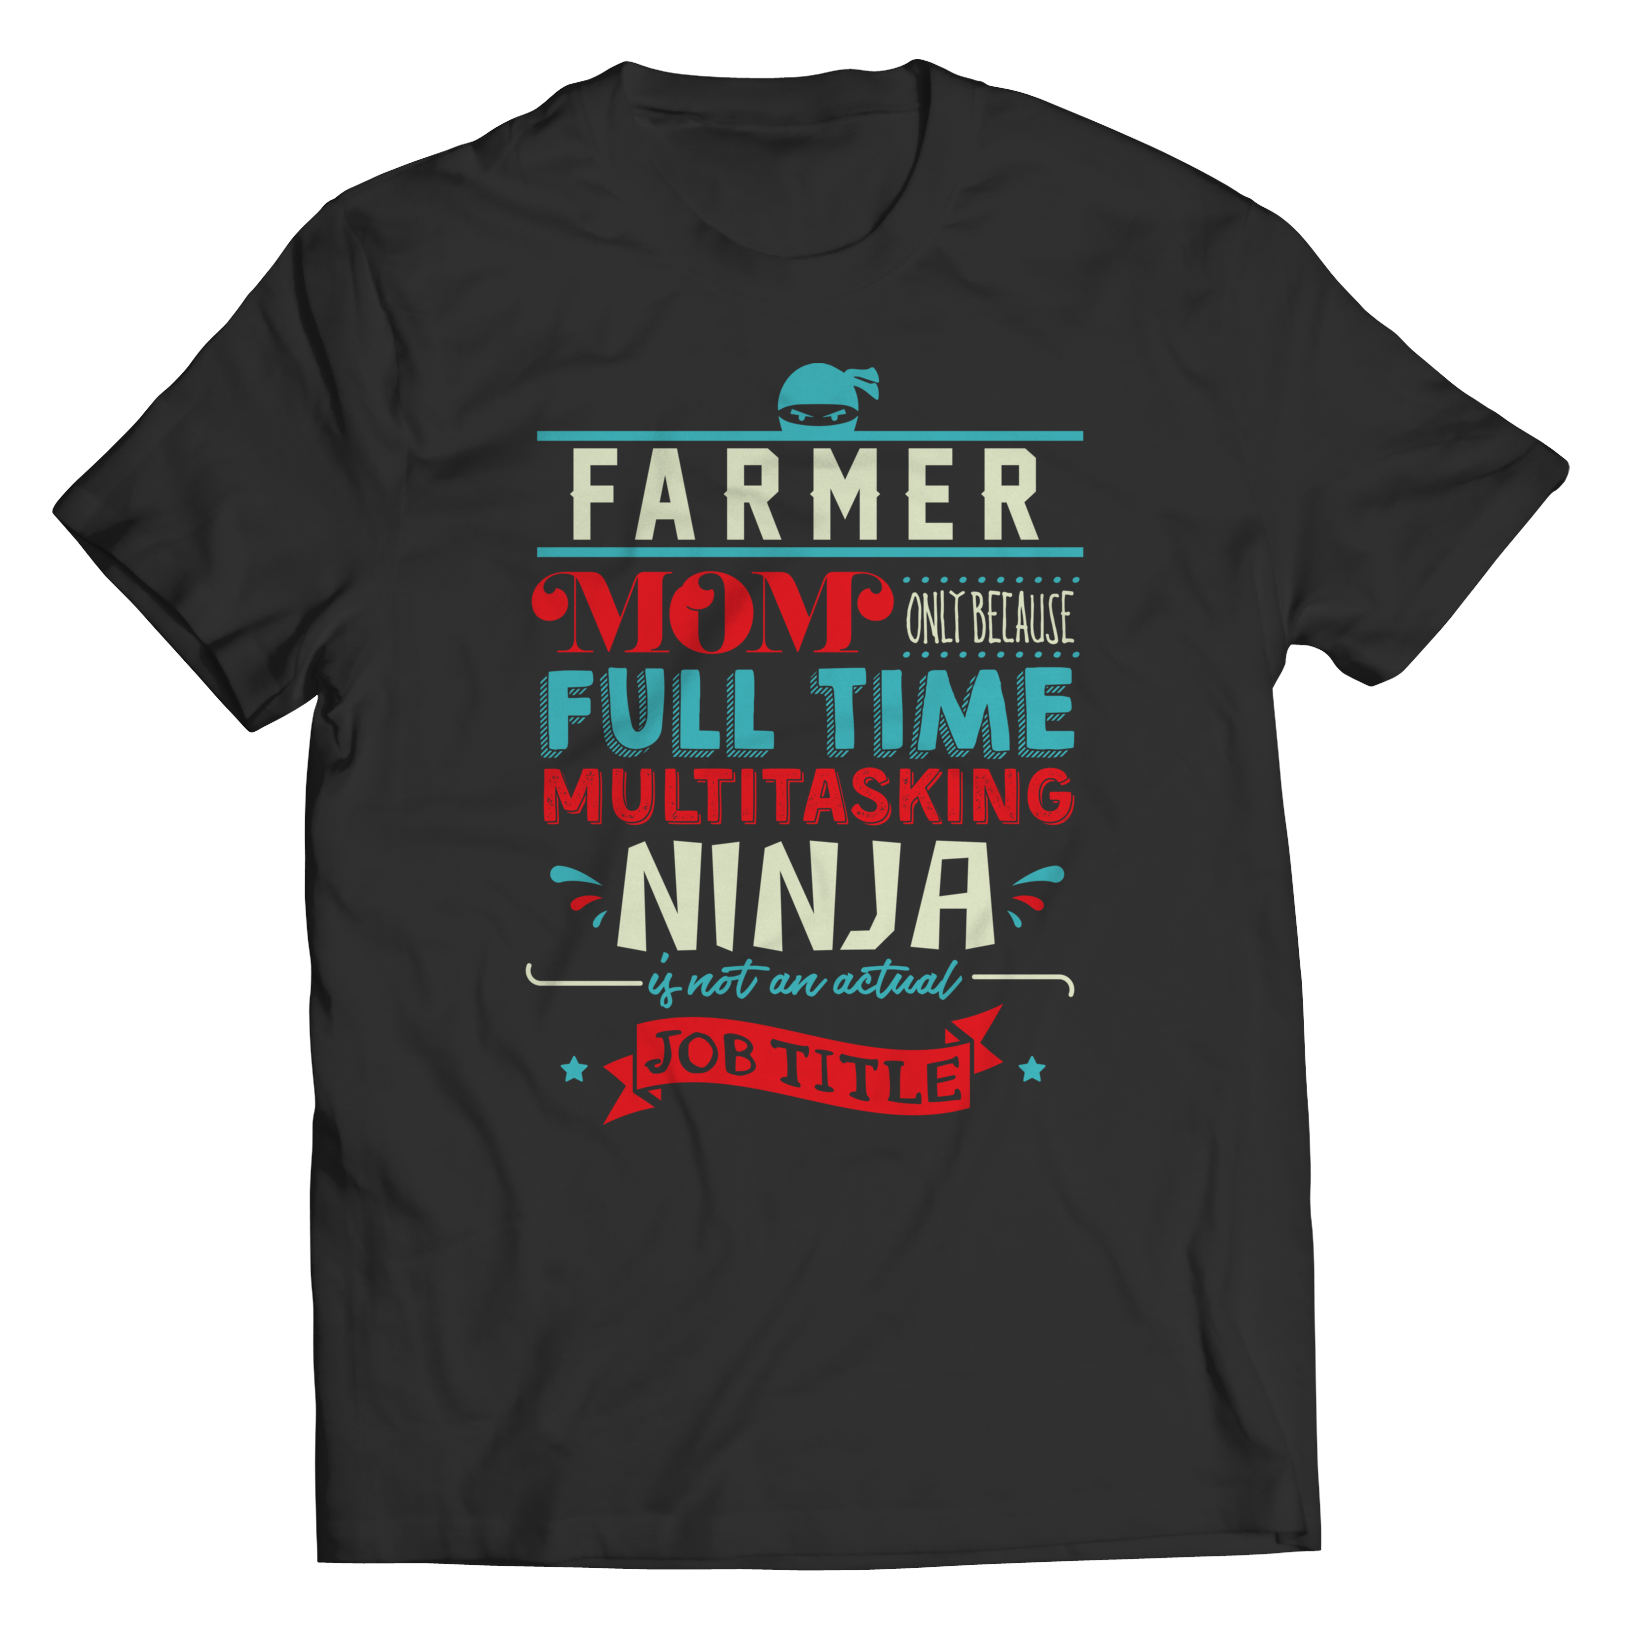 Limited Edition - Farmer Ninja Mom